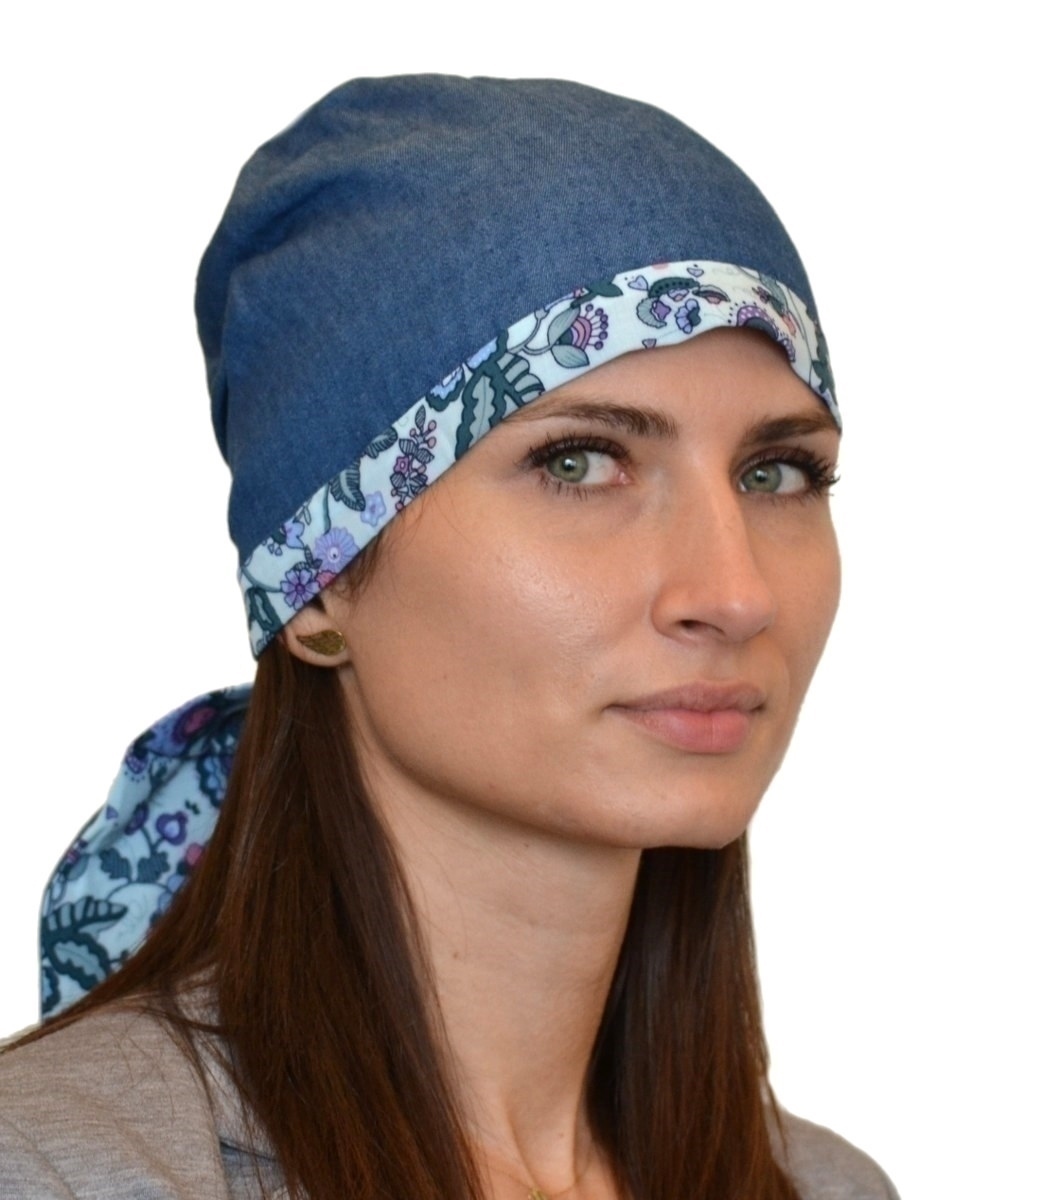 Nowy model turbanu w kolekcji Beaute de Femme - IZA